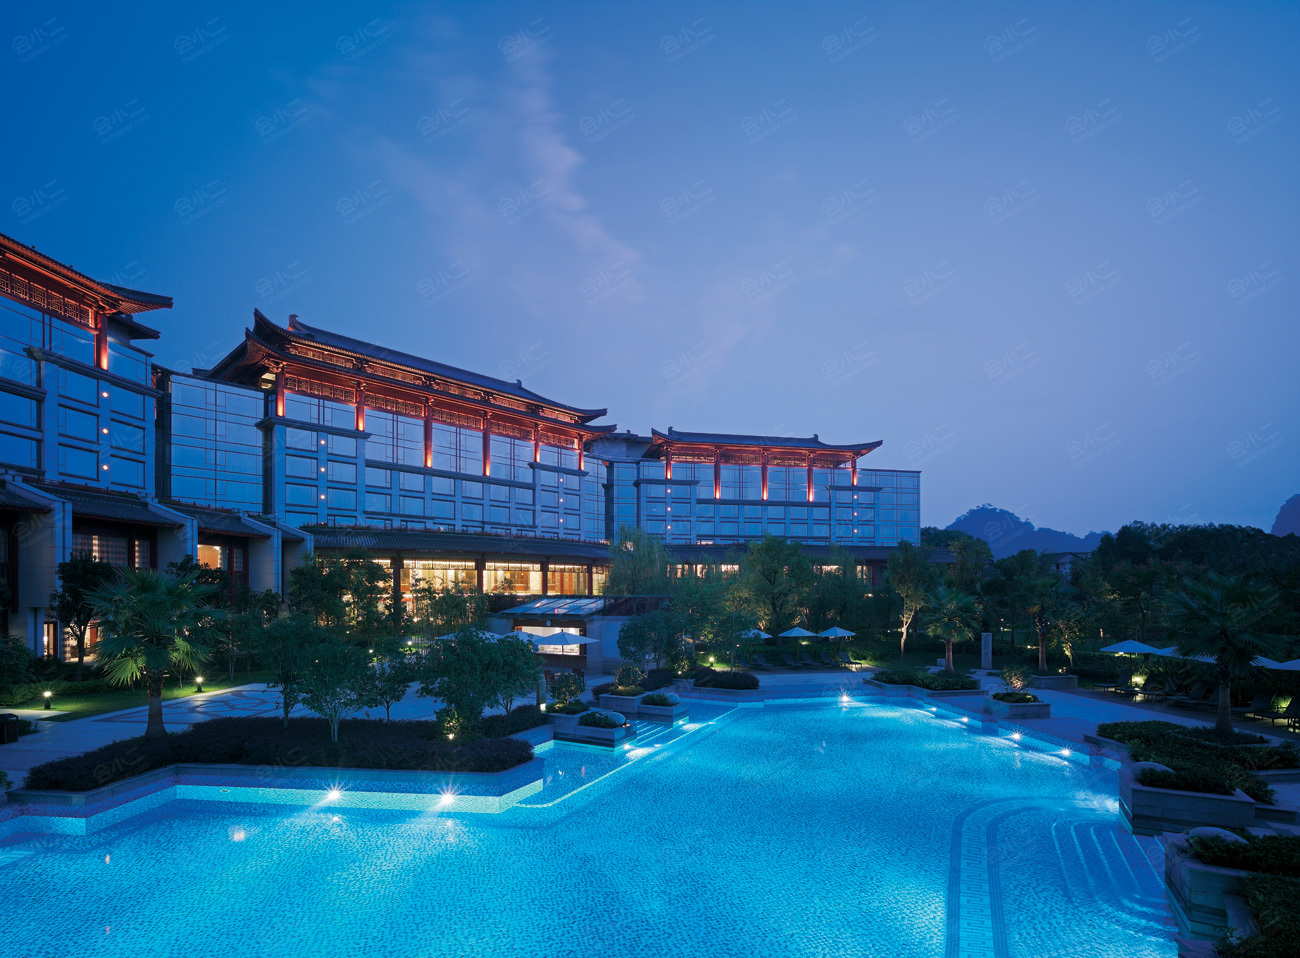 桂林香格里拉大酒店素材图片下载-素材编号10006165-素材天下图库